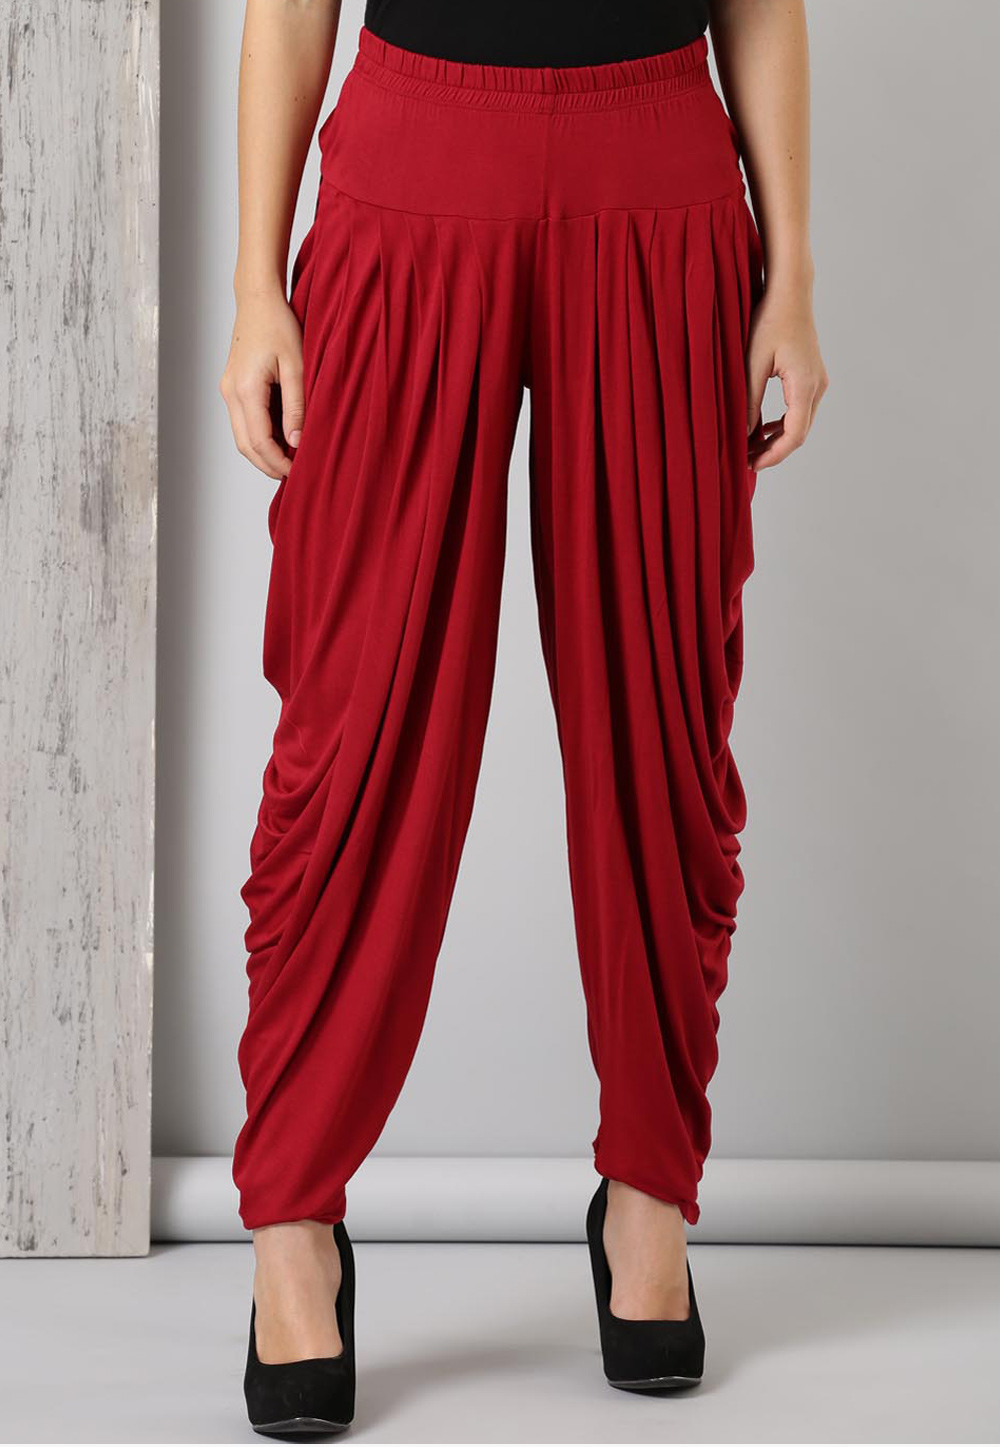 Pant Funky/harem Pants 100% Cotton M,L,XL 1170 - Etsy | Harem pants,  Fashion hacks clothes, Black pants casual